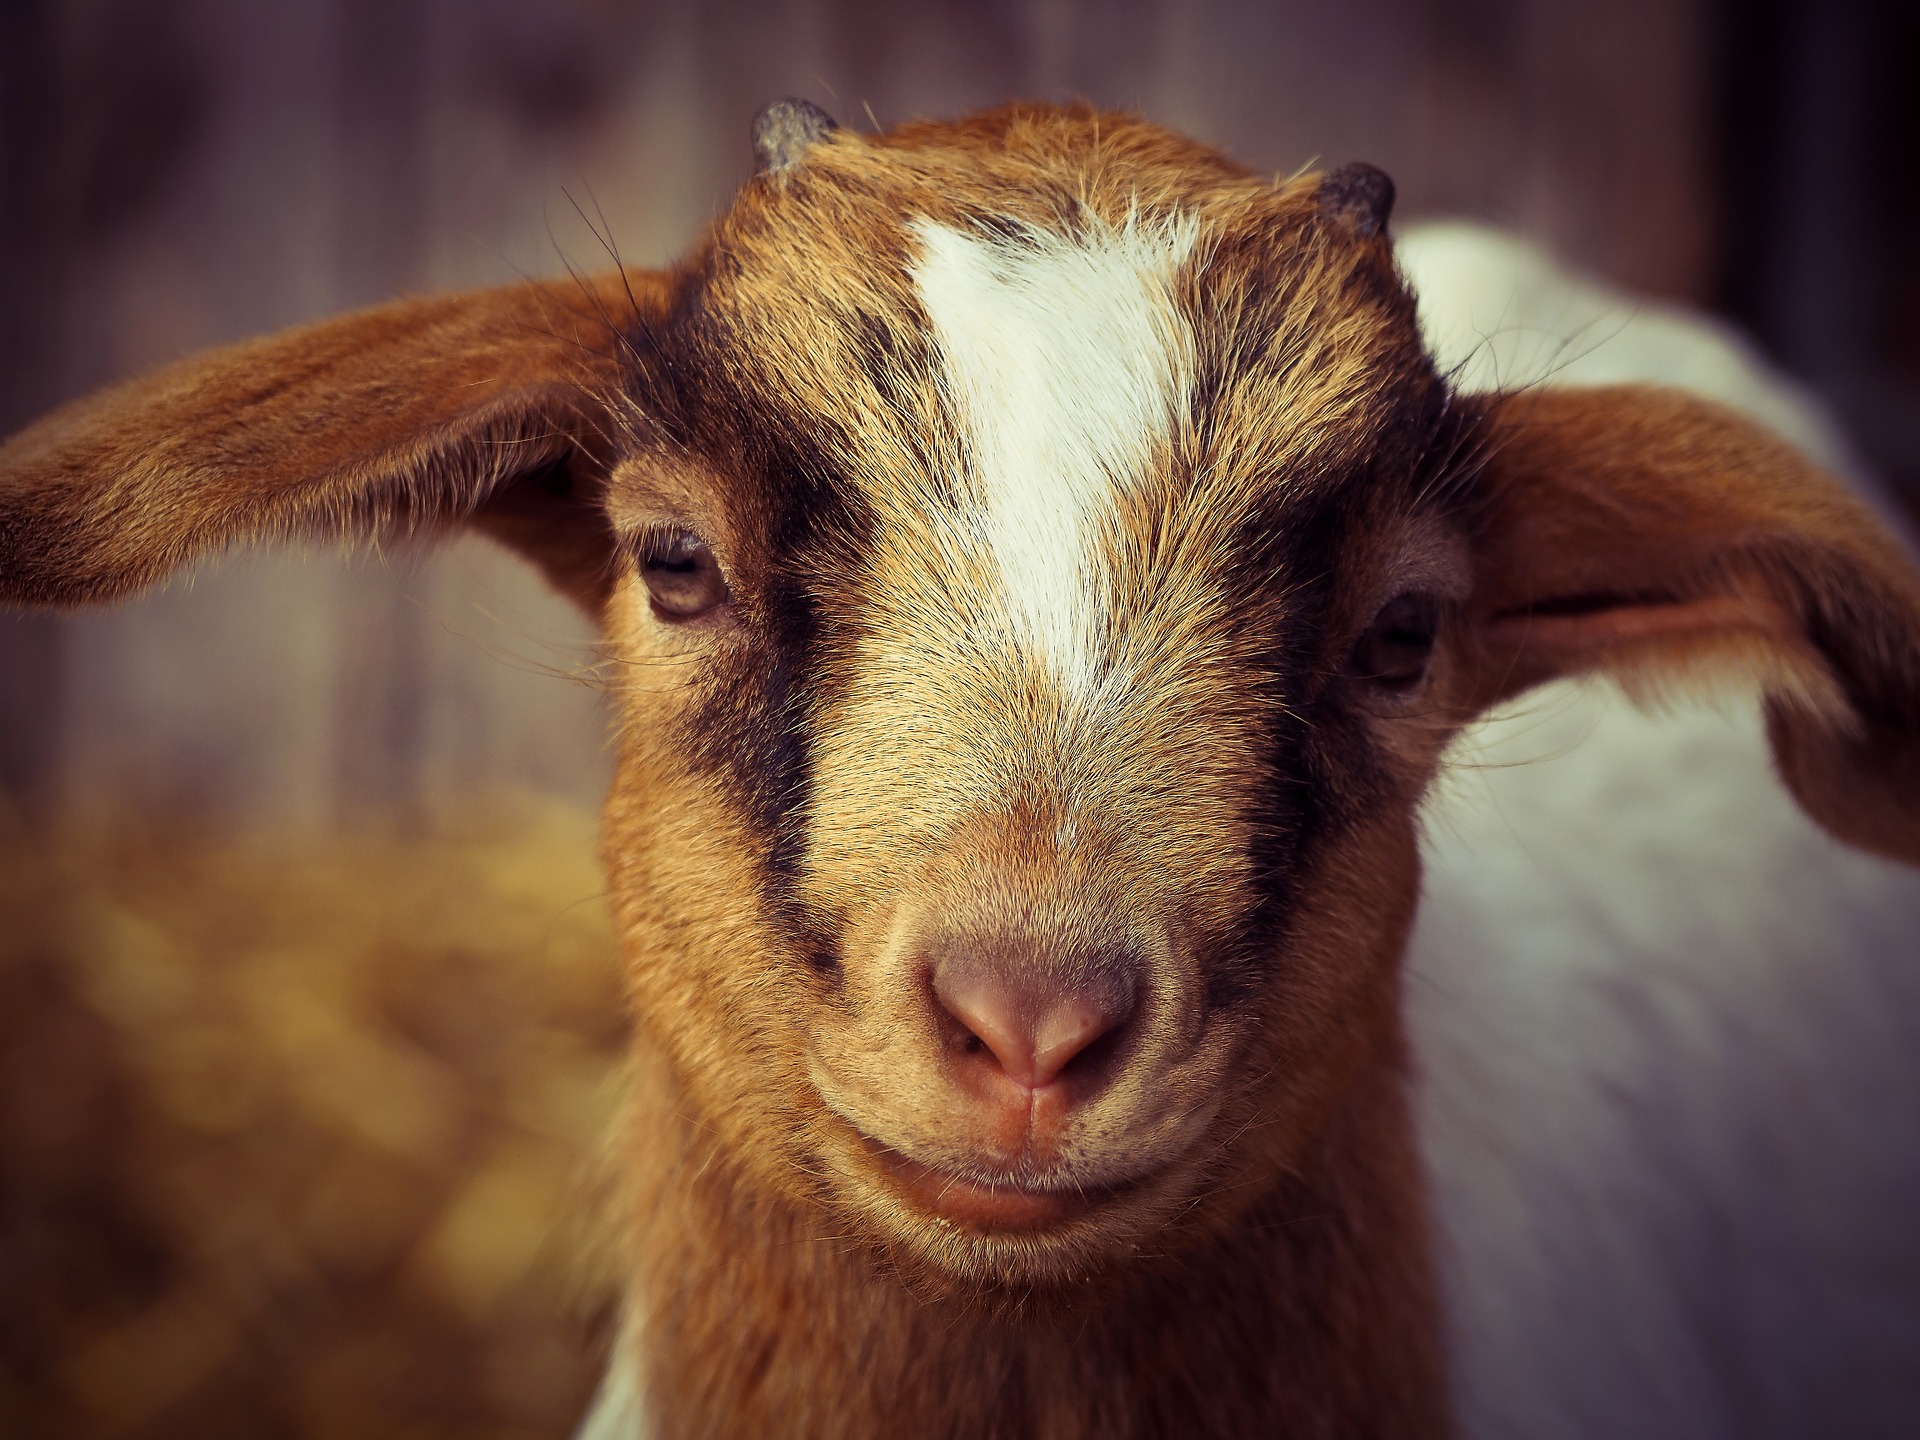 Goat 4.jpg